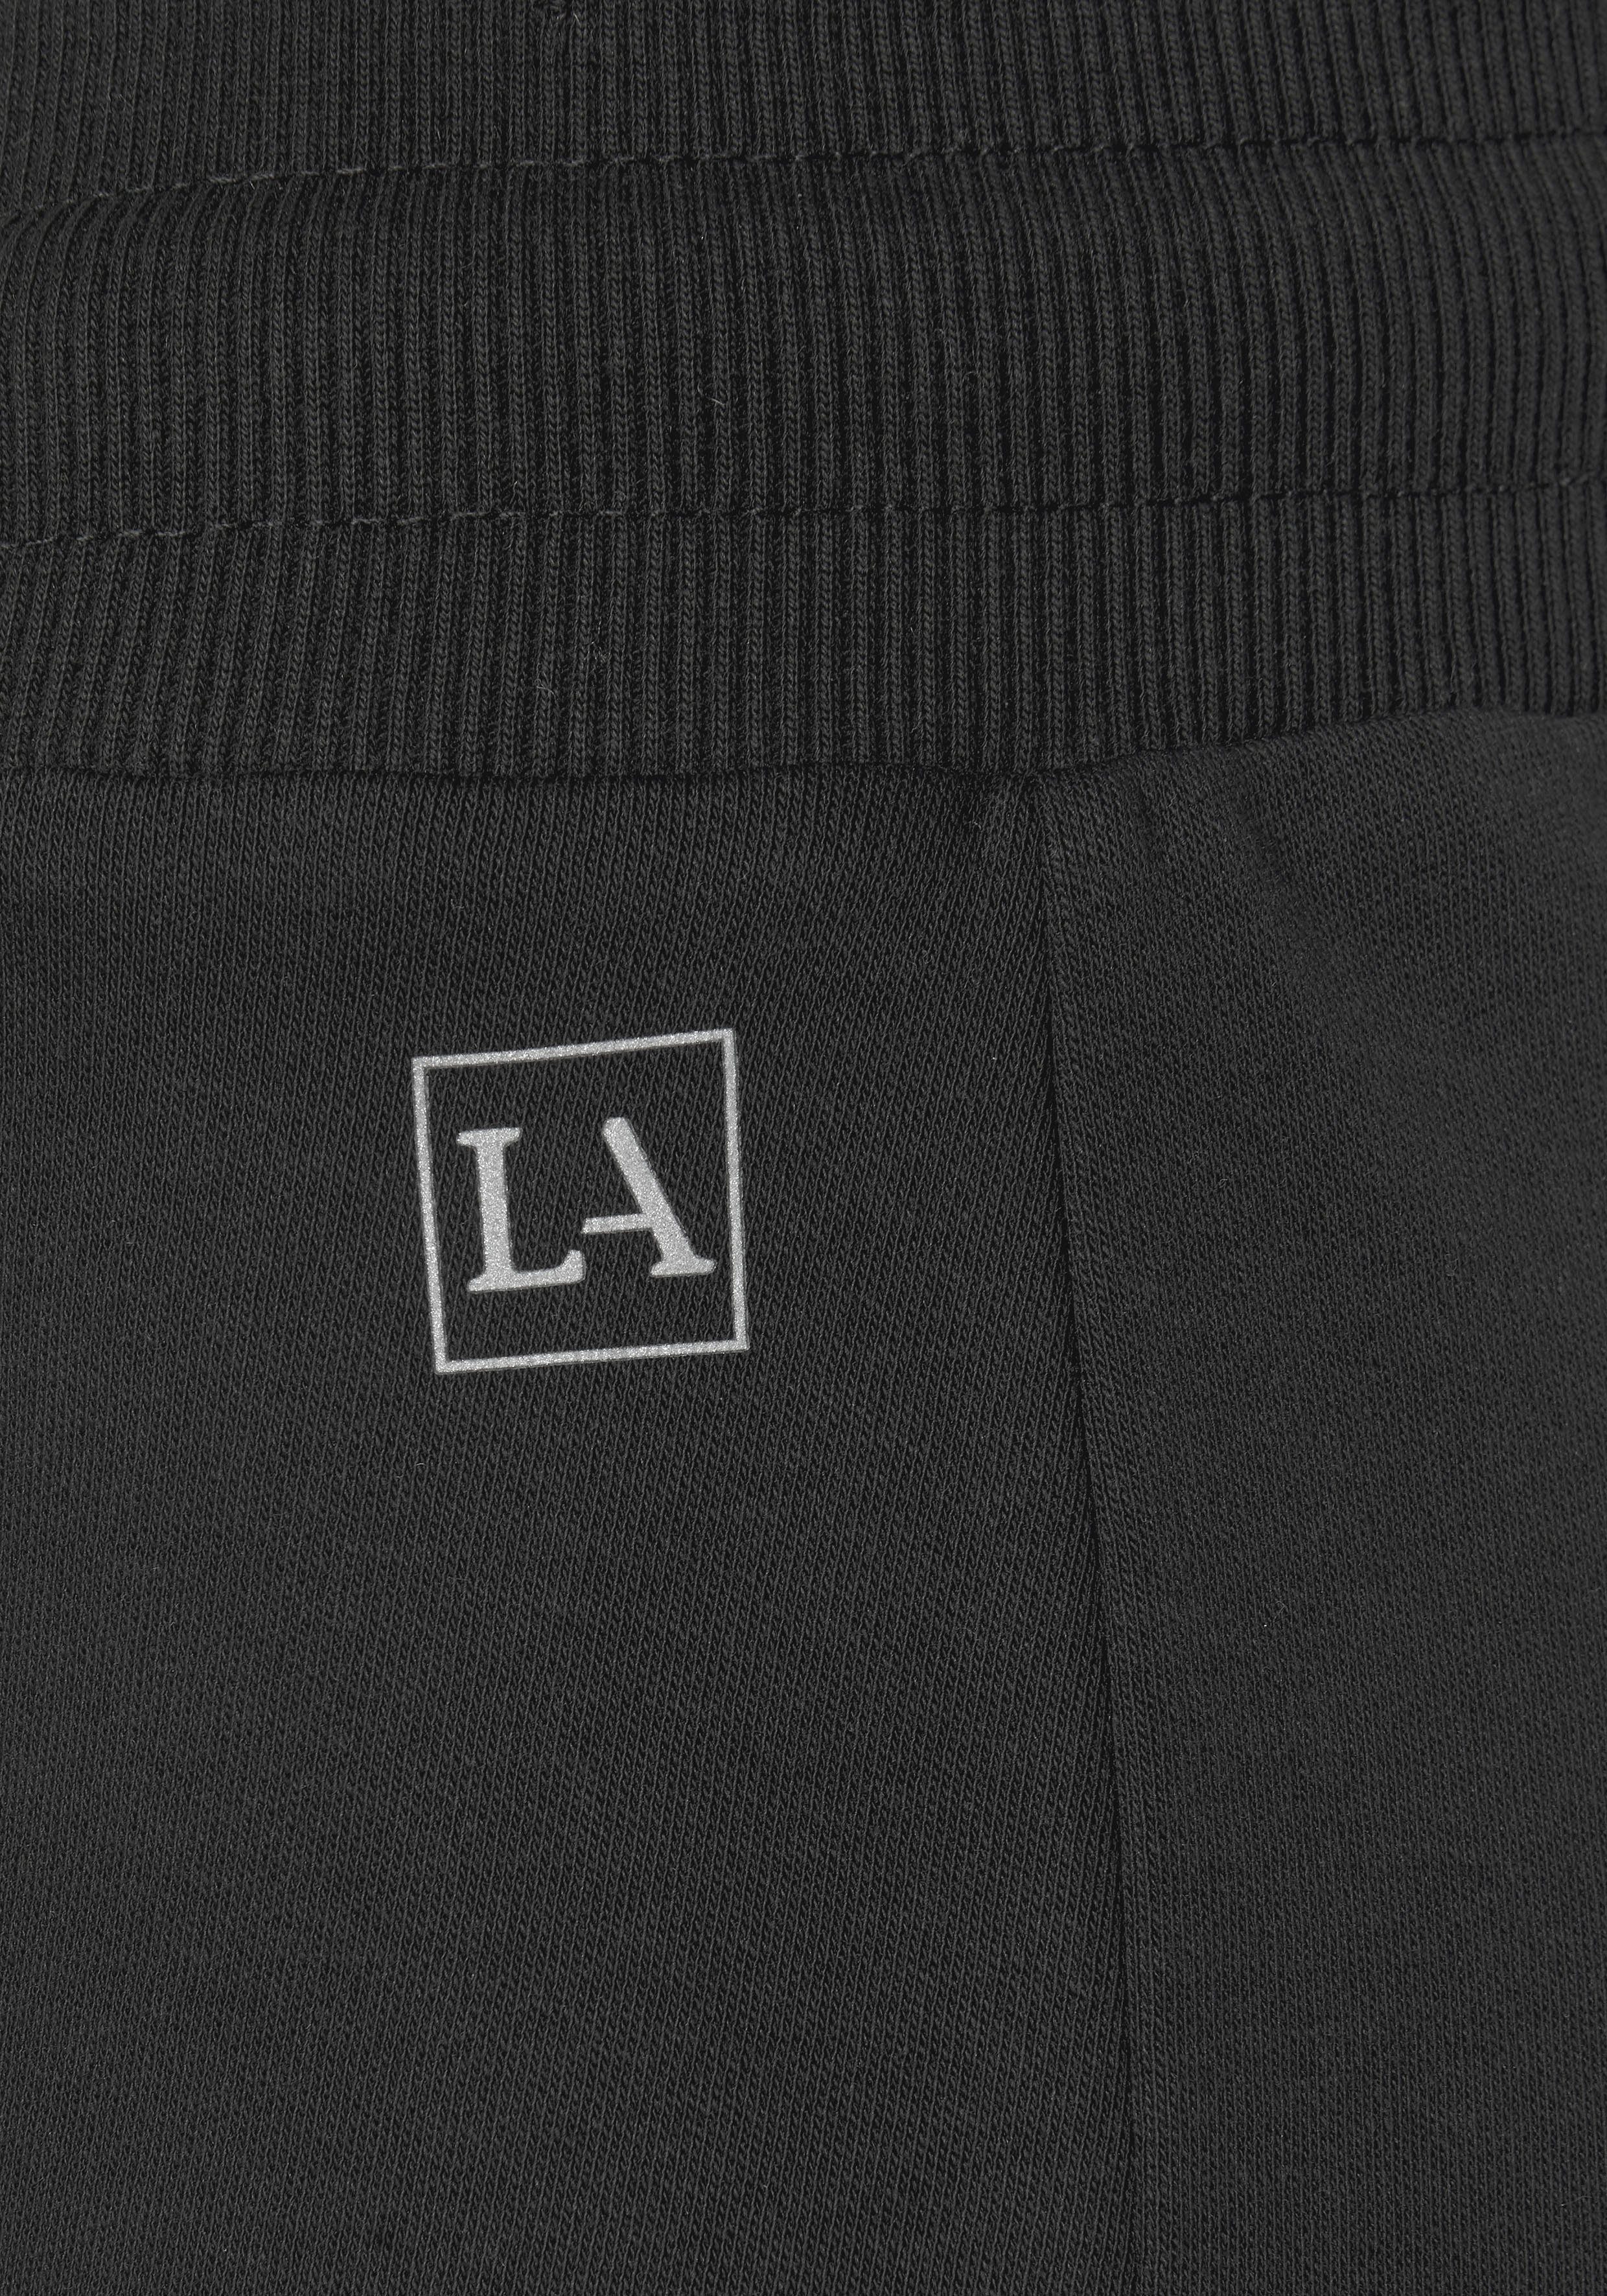 LASCANA ACTIVE Shorts mit kleinen Seitenschlitzen schwarz